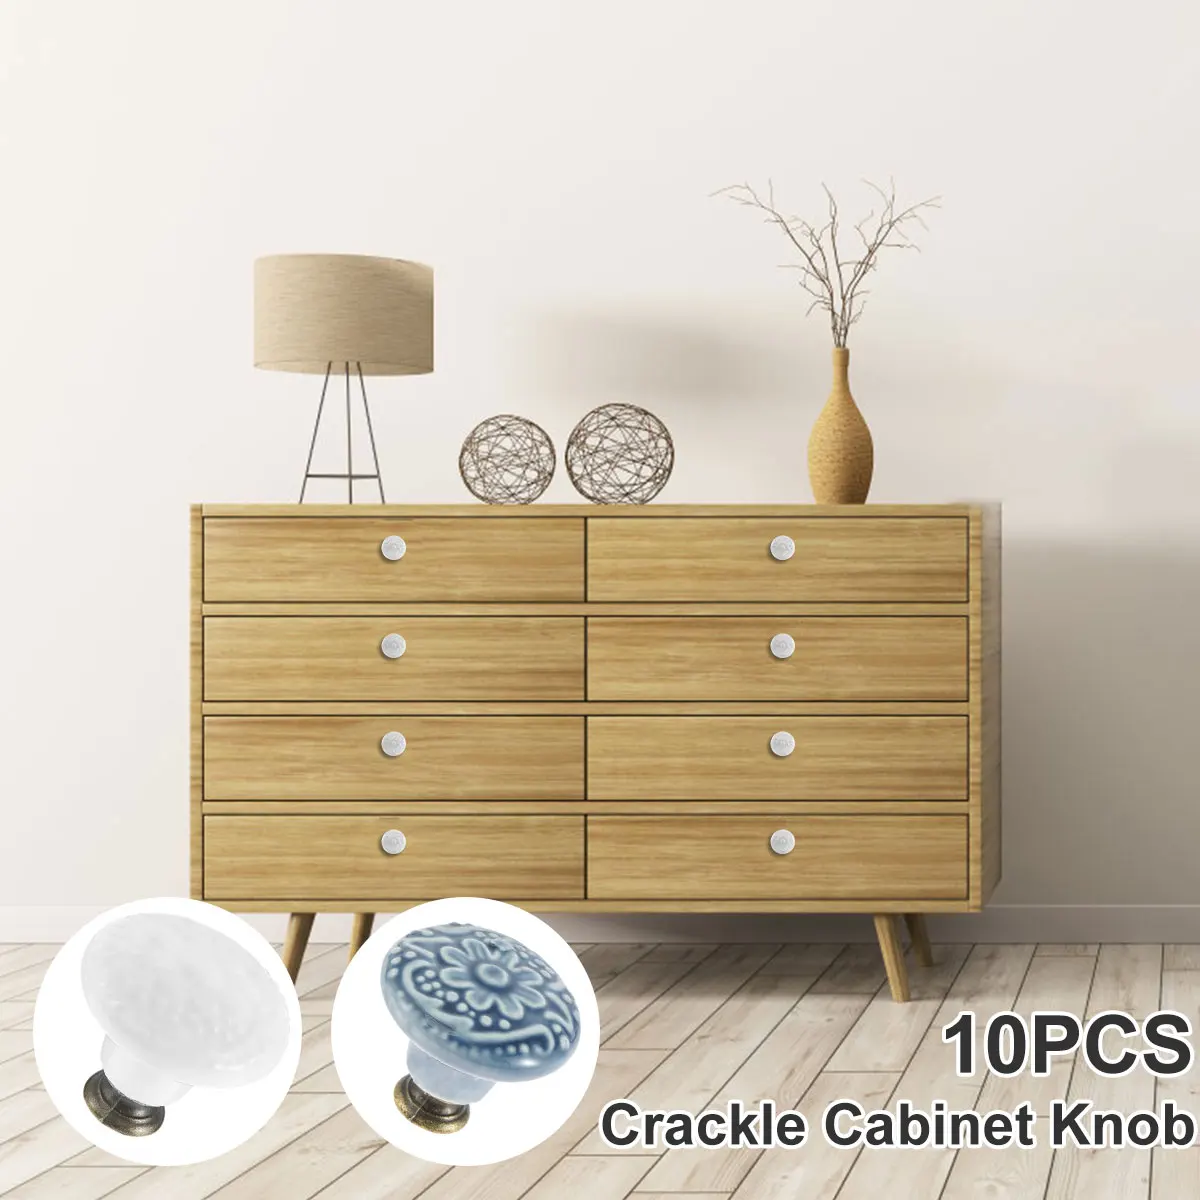 10 Pcs Drawer Pull Handles Round Cabinet Knobs Vintage Ceramic Door Knobs for Closet Cupboard Wardrobe Dresser Kitchen Furniture